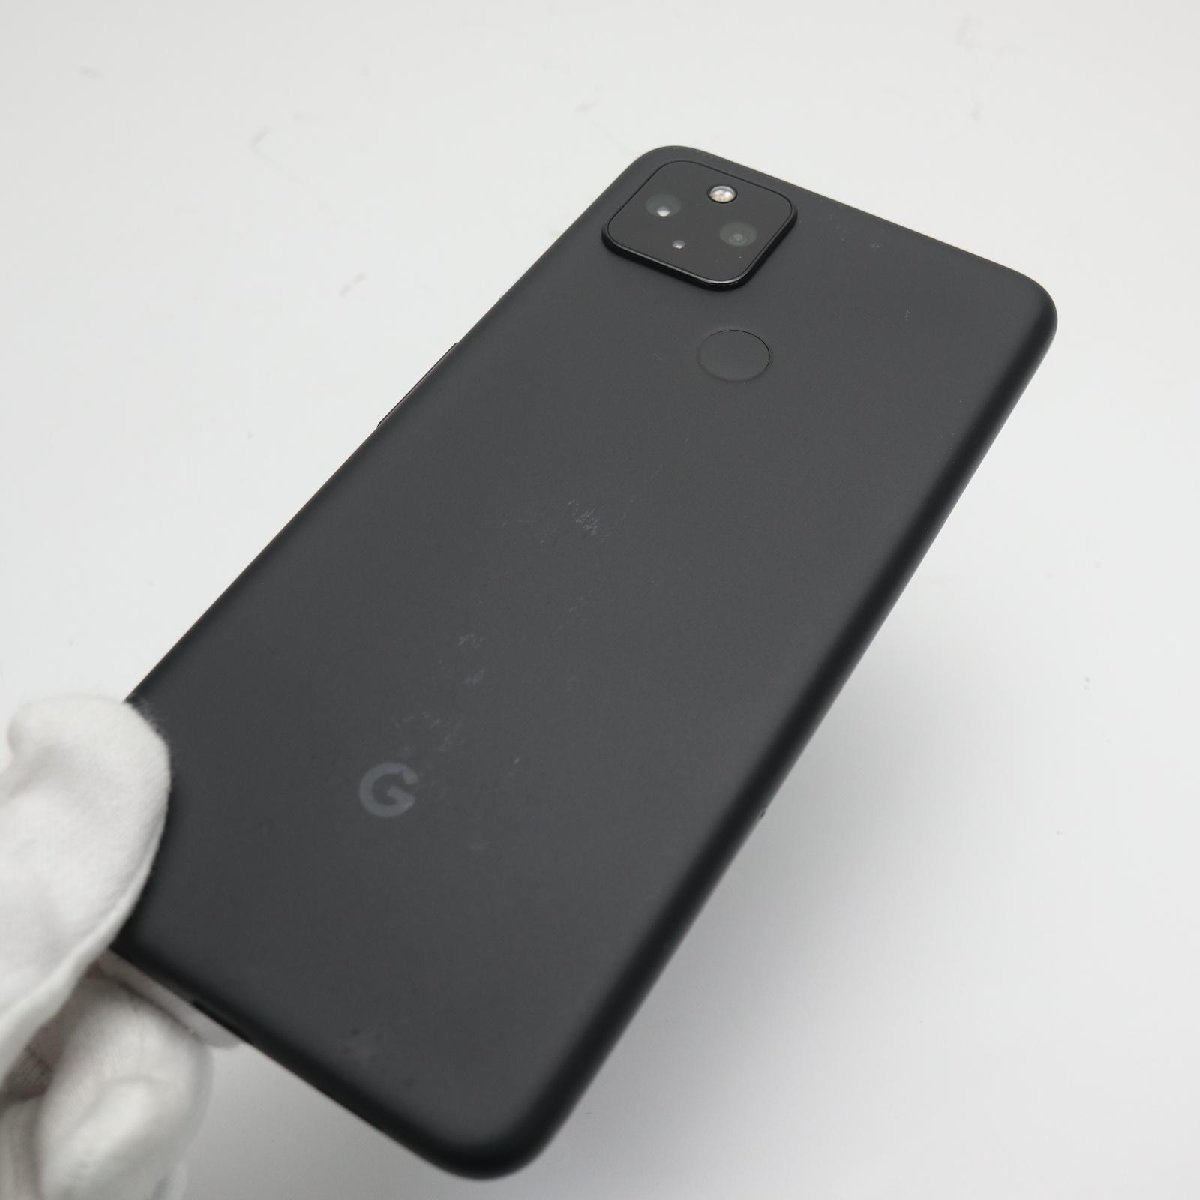 色々な 白ロム スマホ 即日発送 ブラック (5G) 4a Pixel Google SIM